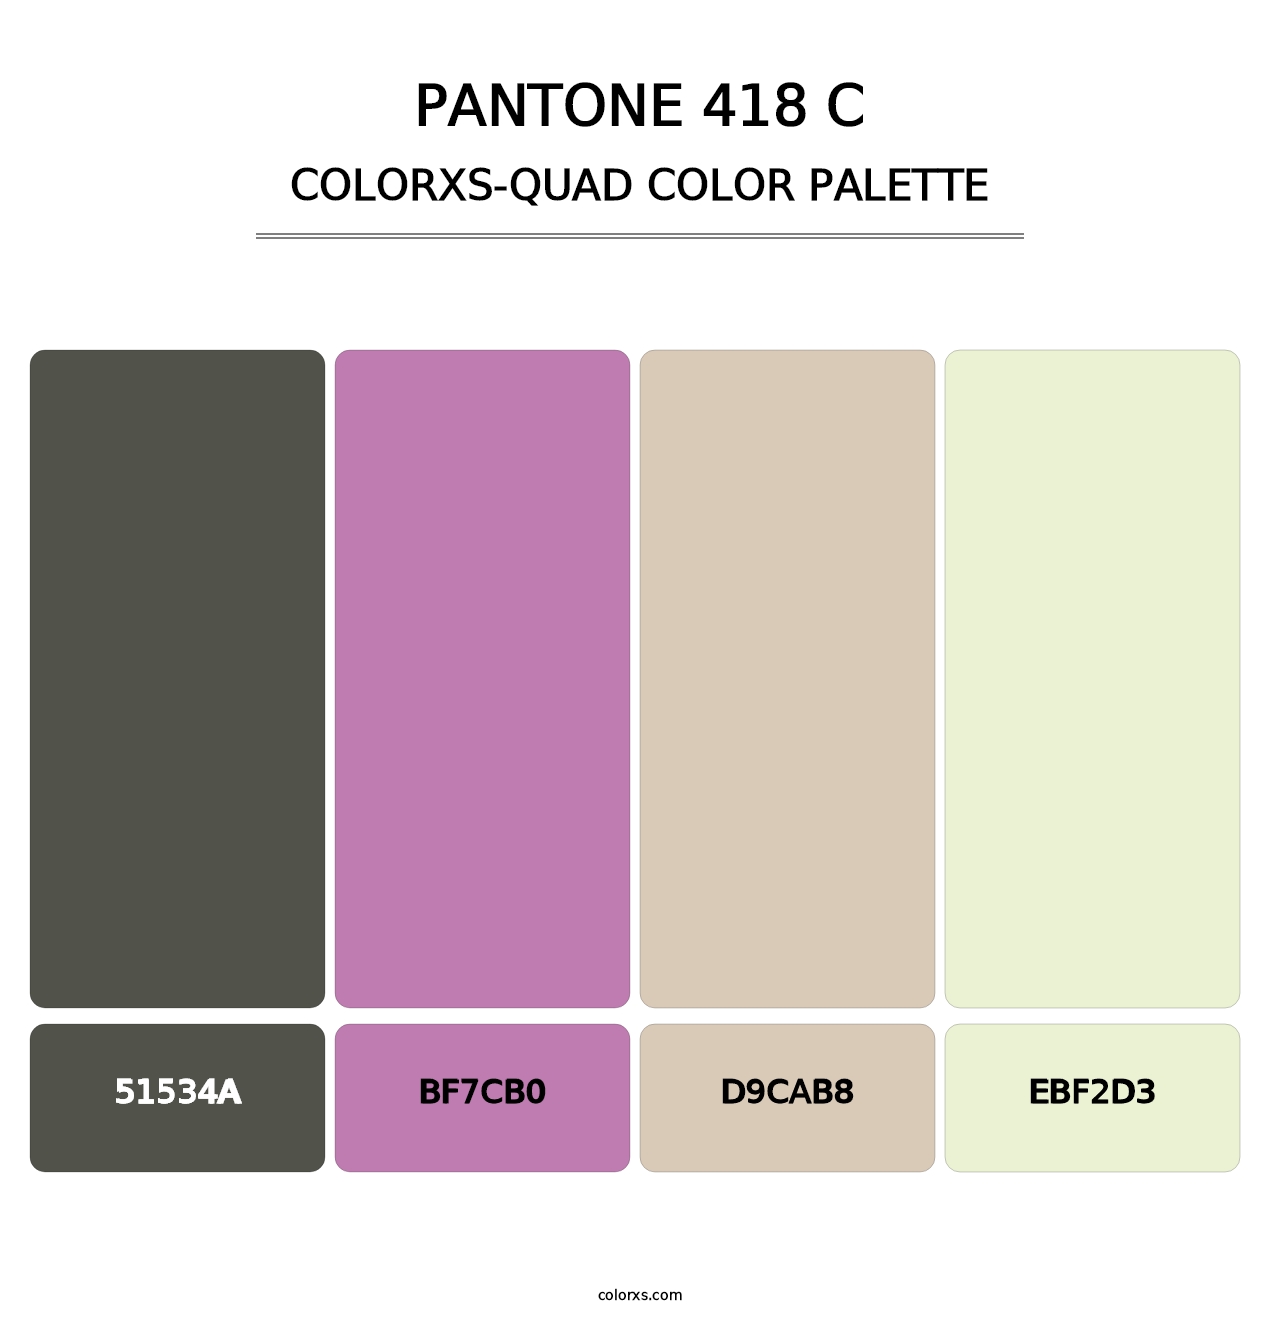 PANTONE 418 C - Colorxs Quad Palette